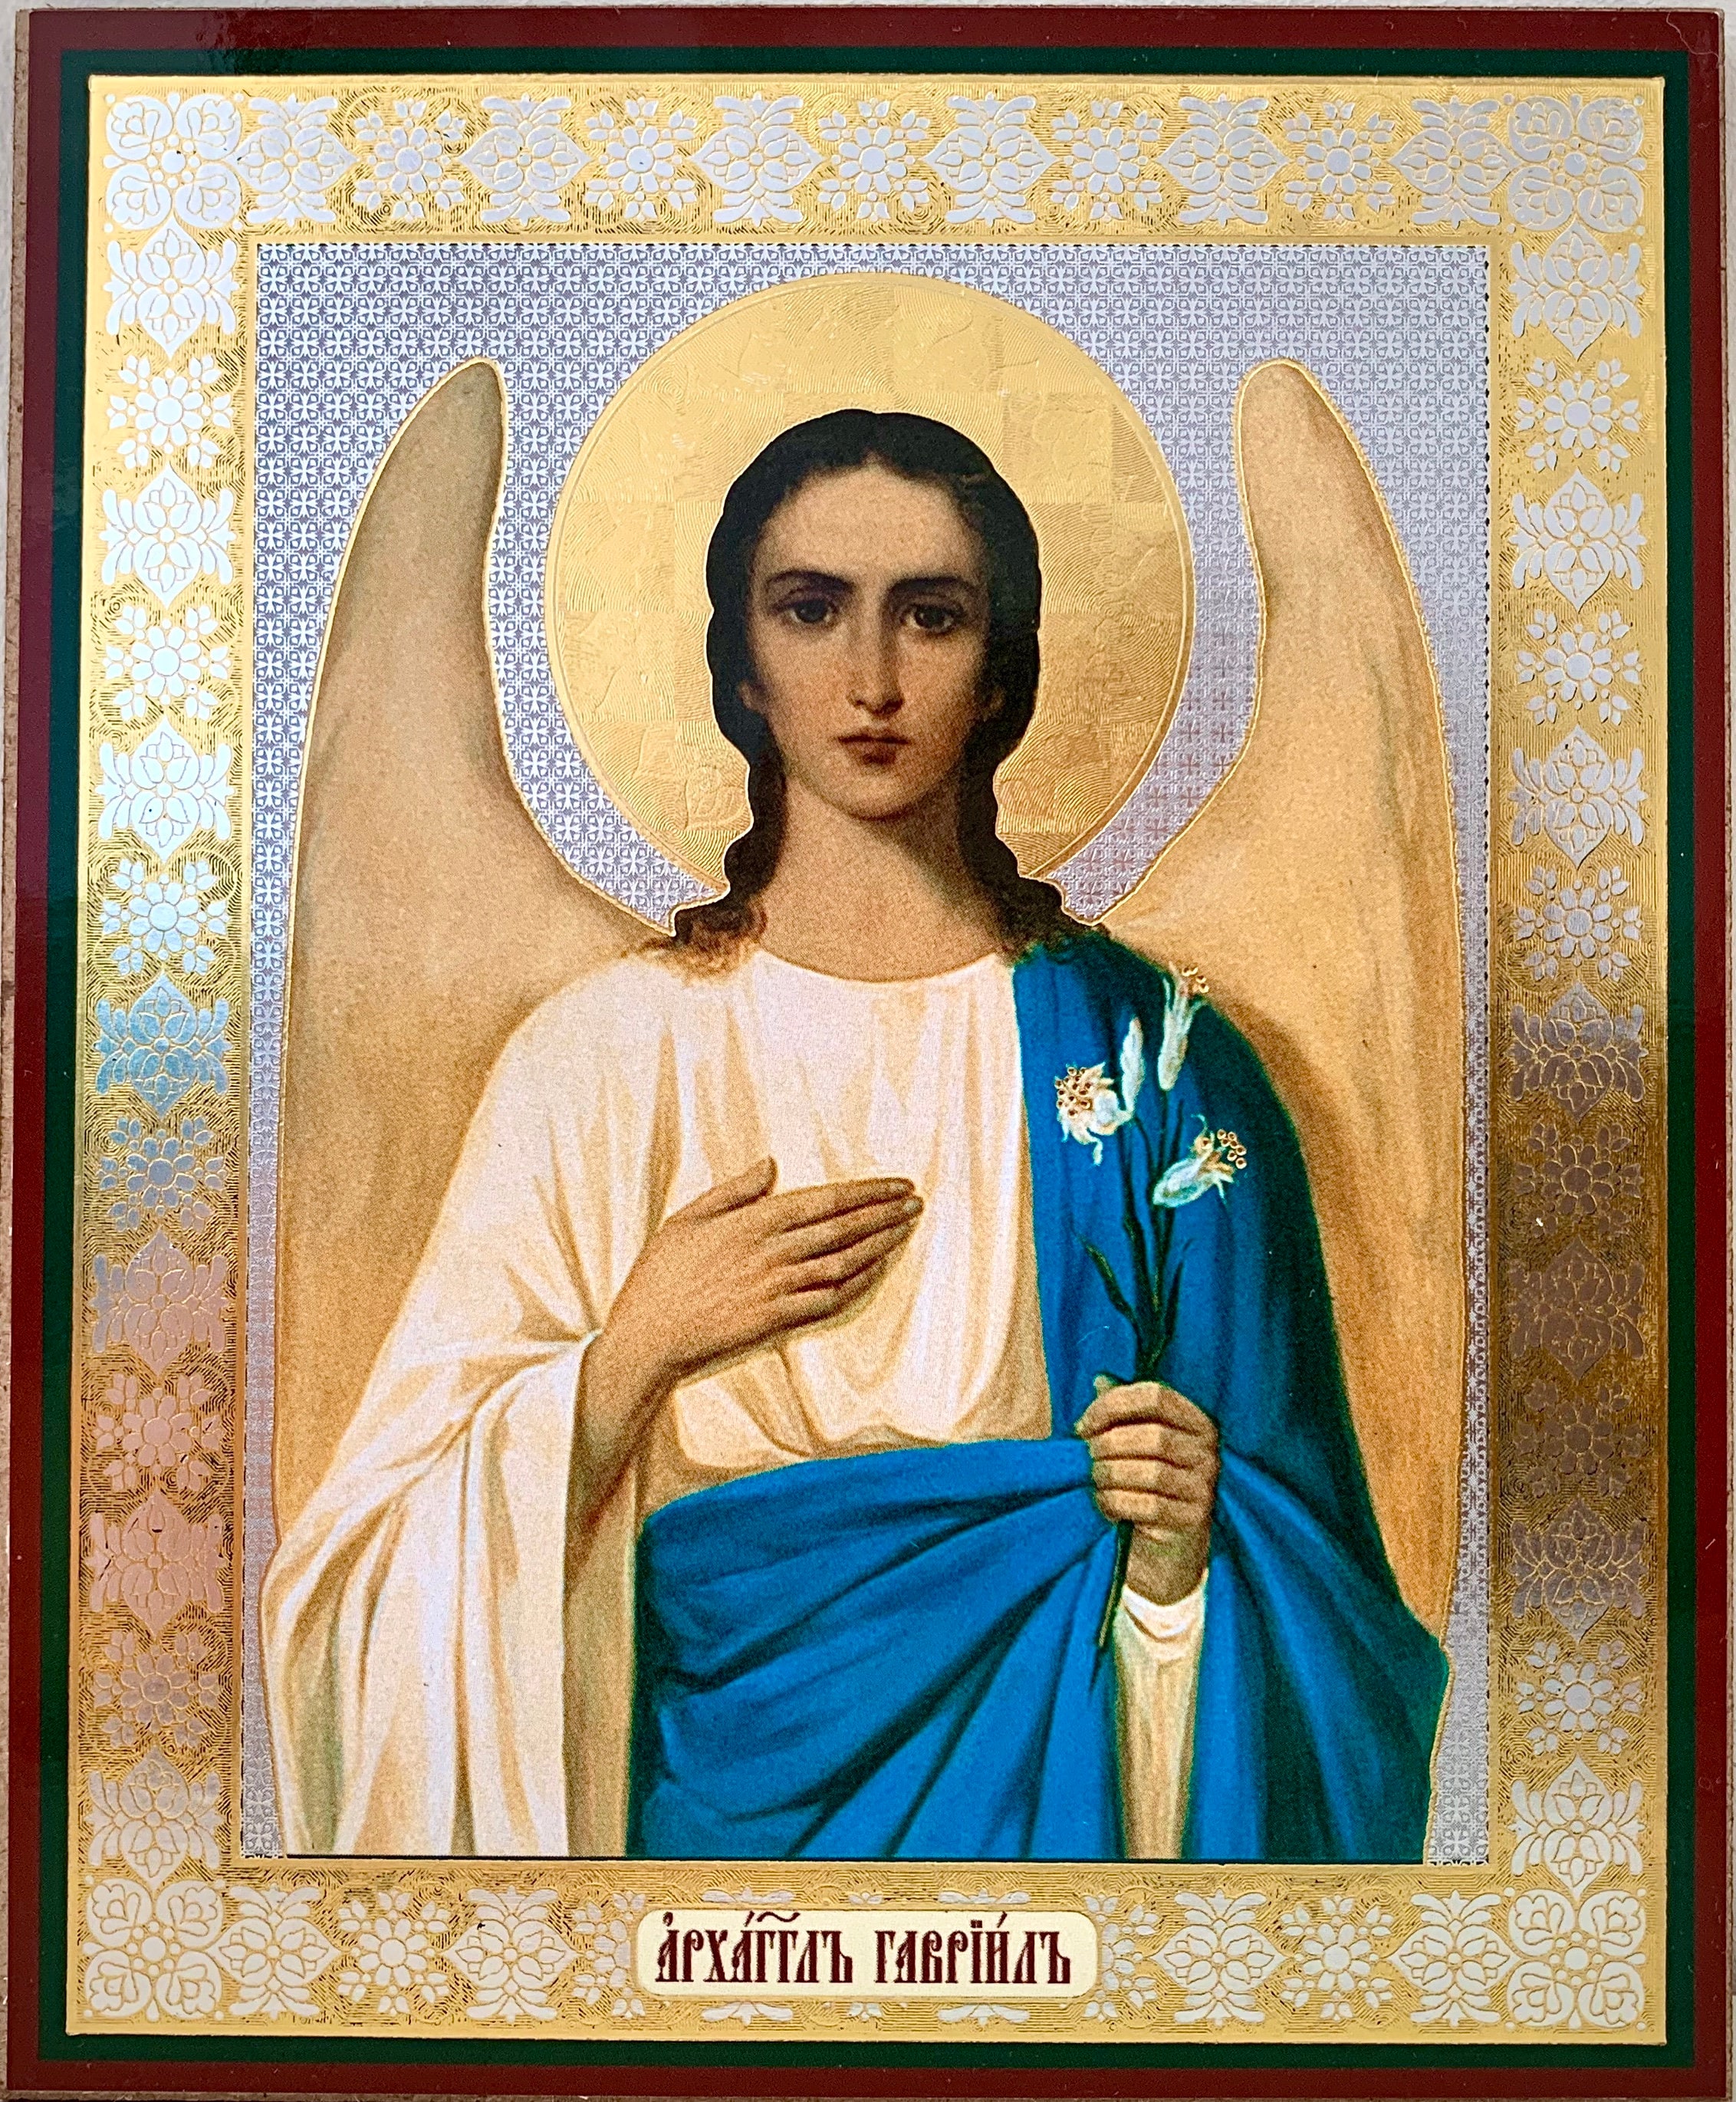 Archangel gabriel icon | Etsy